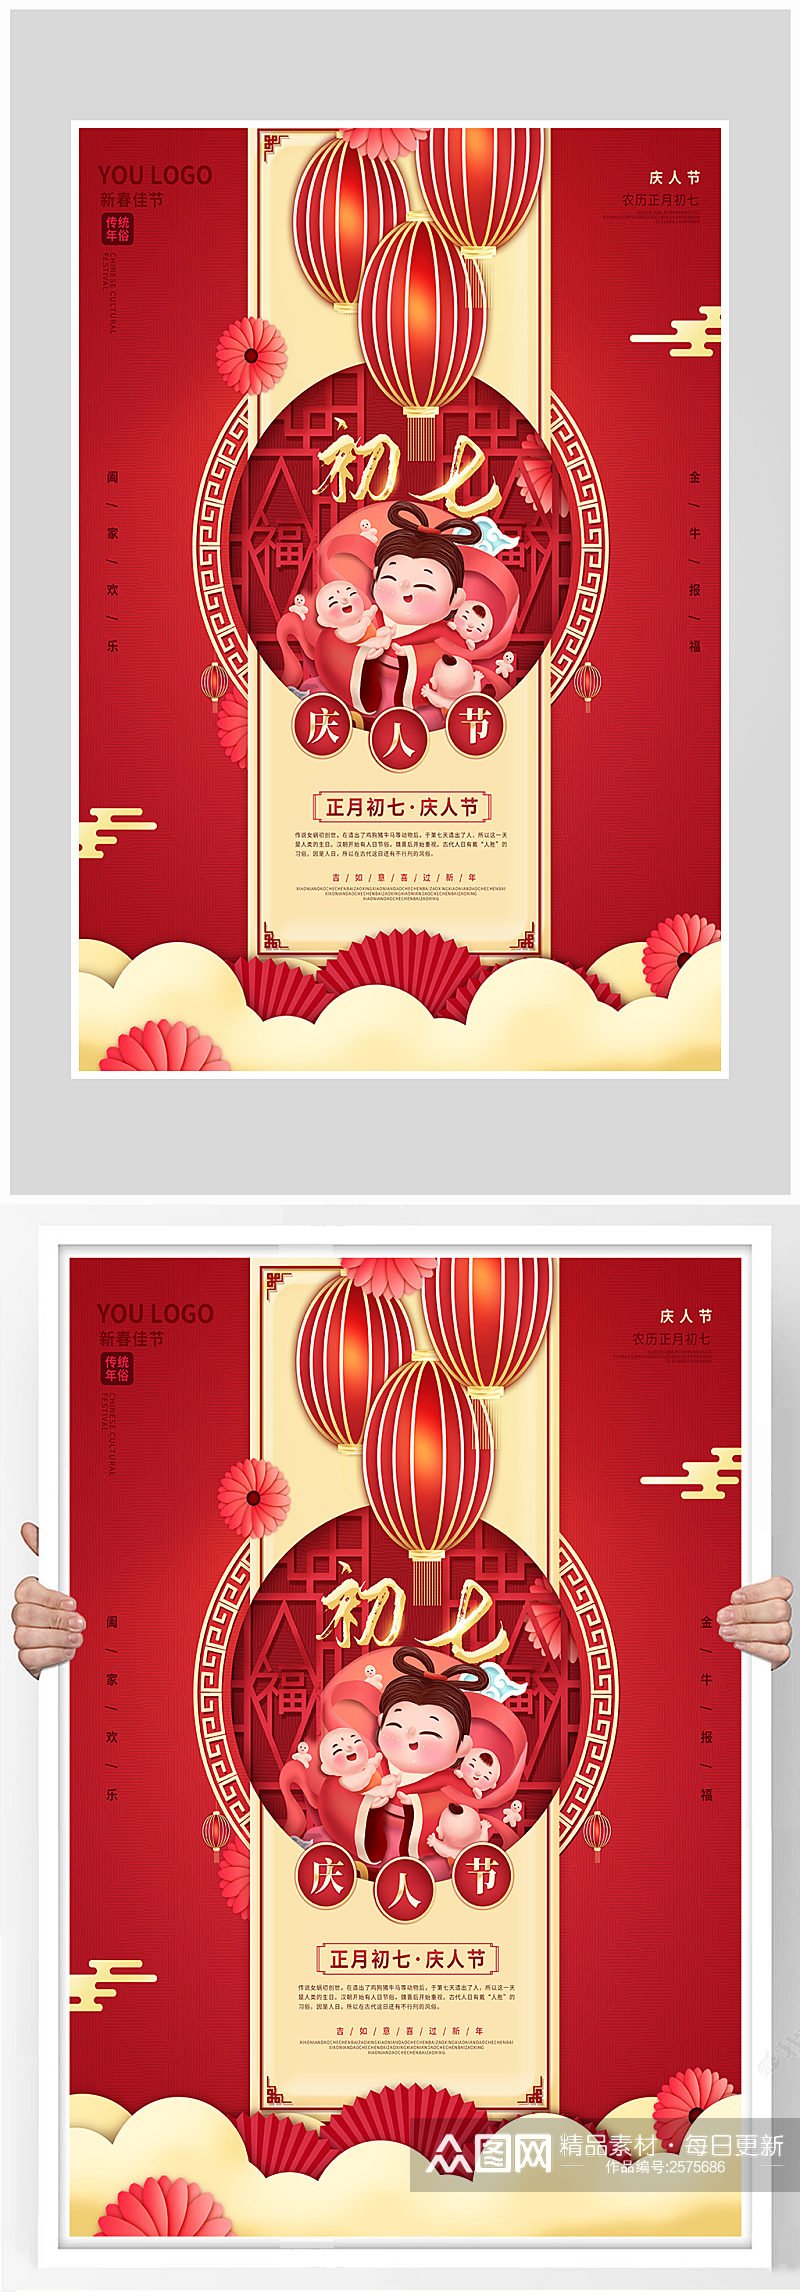 红色质感大年初七新年海报设计素材